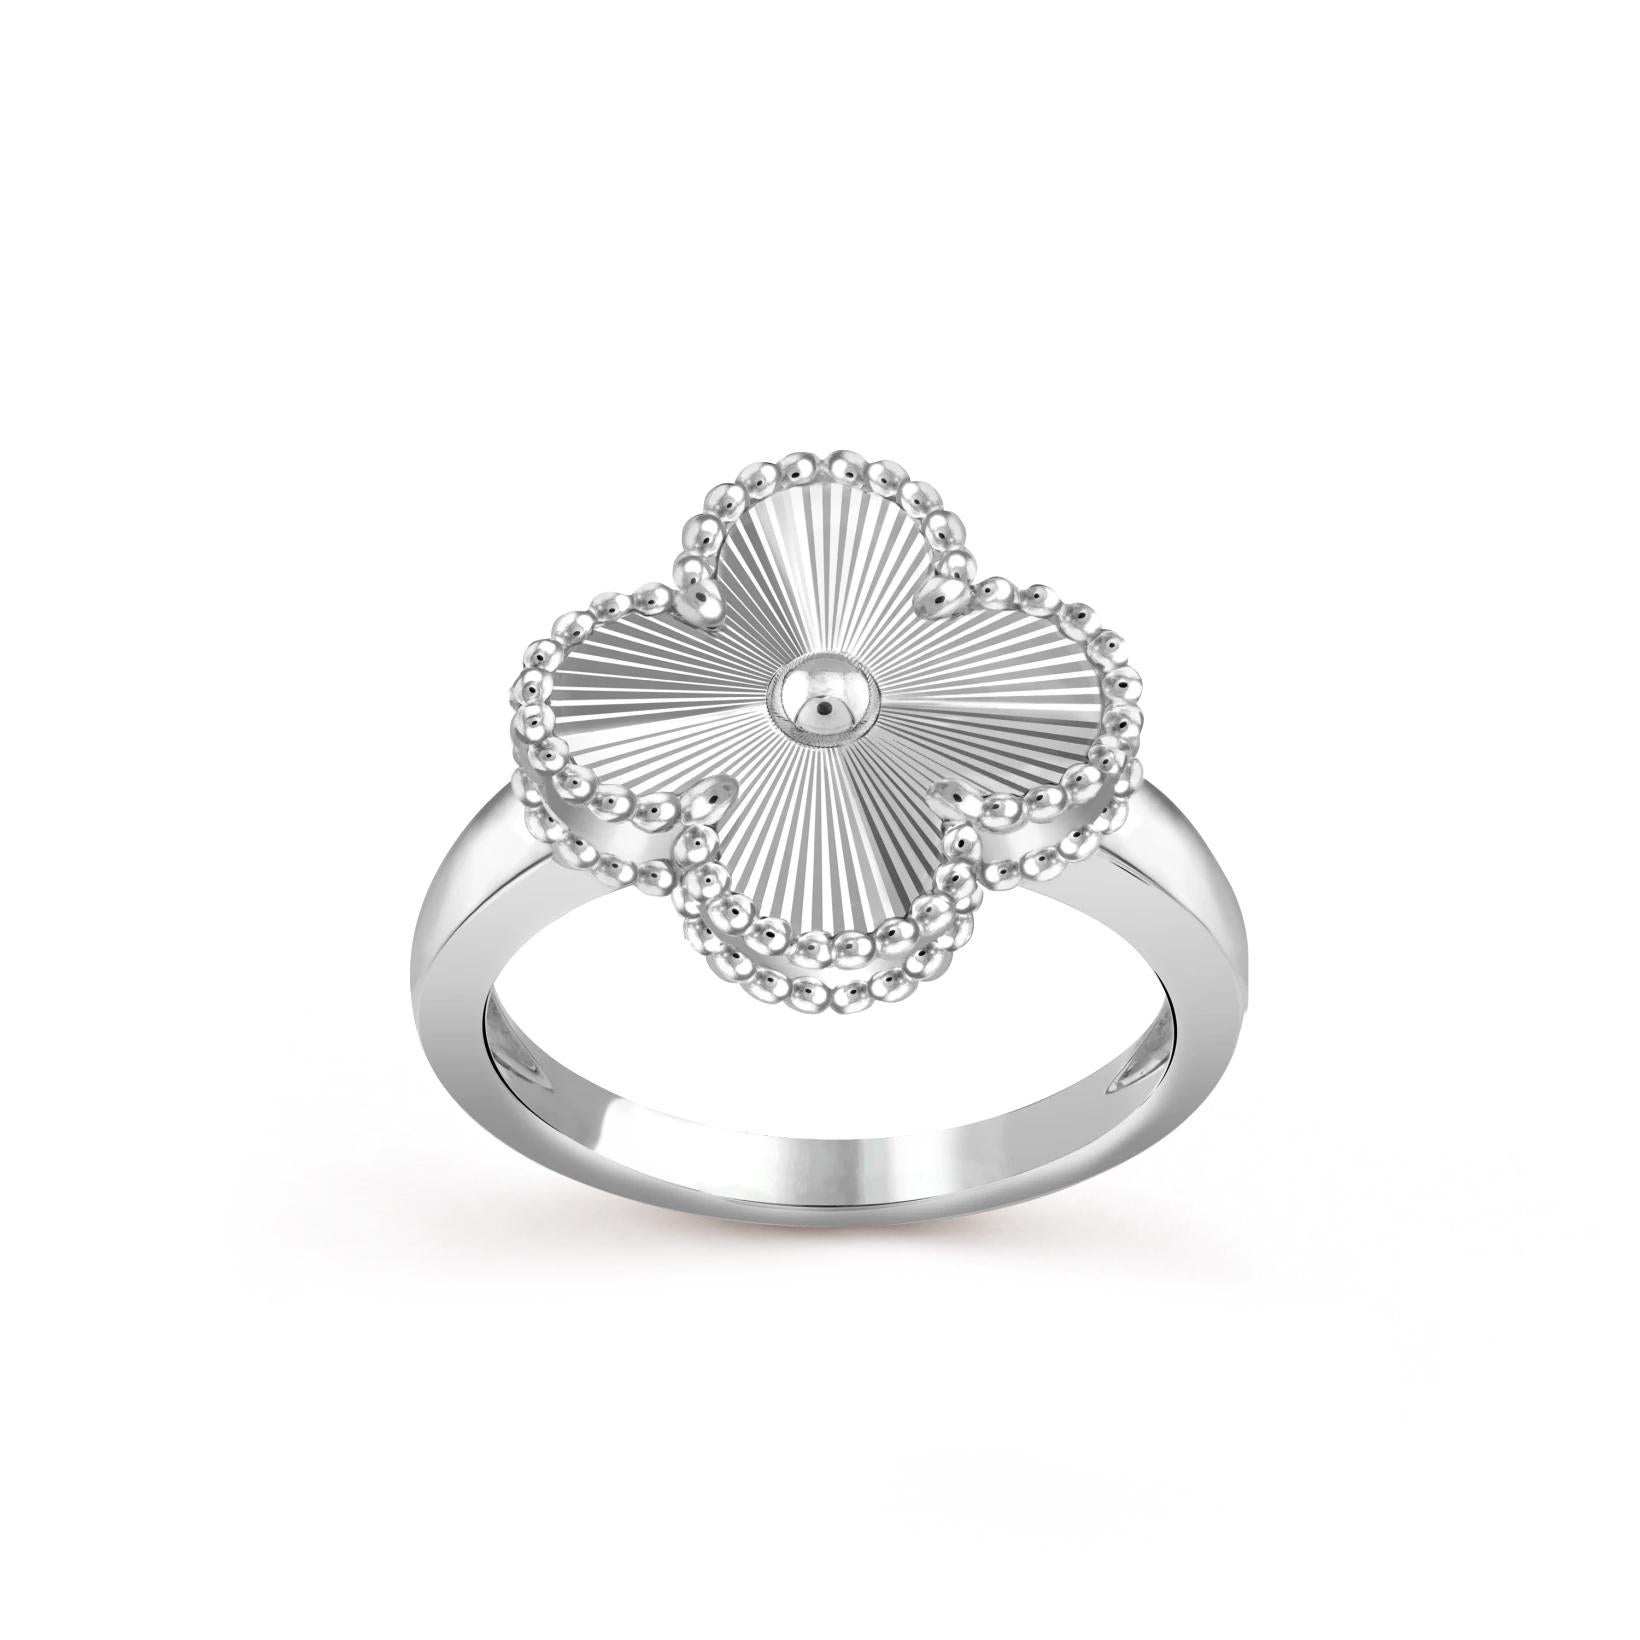  Wunderschöner Ring des famosen Designers Van Cleef & Arpels. Das Design ist als Vintage Alhambra Ring bekannt, Guillochierung in 18 Karat Weißgold.

Der Ring ist zeitlos und klassisch, ideal für das tägliche Tragen. Der Ring hat die Größe 54 und